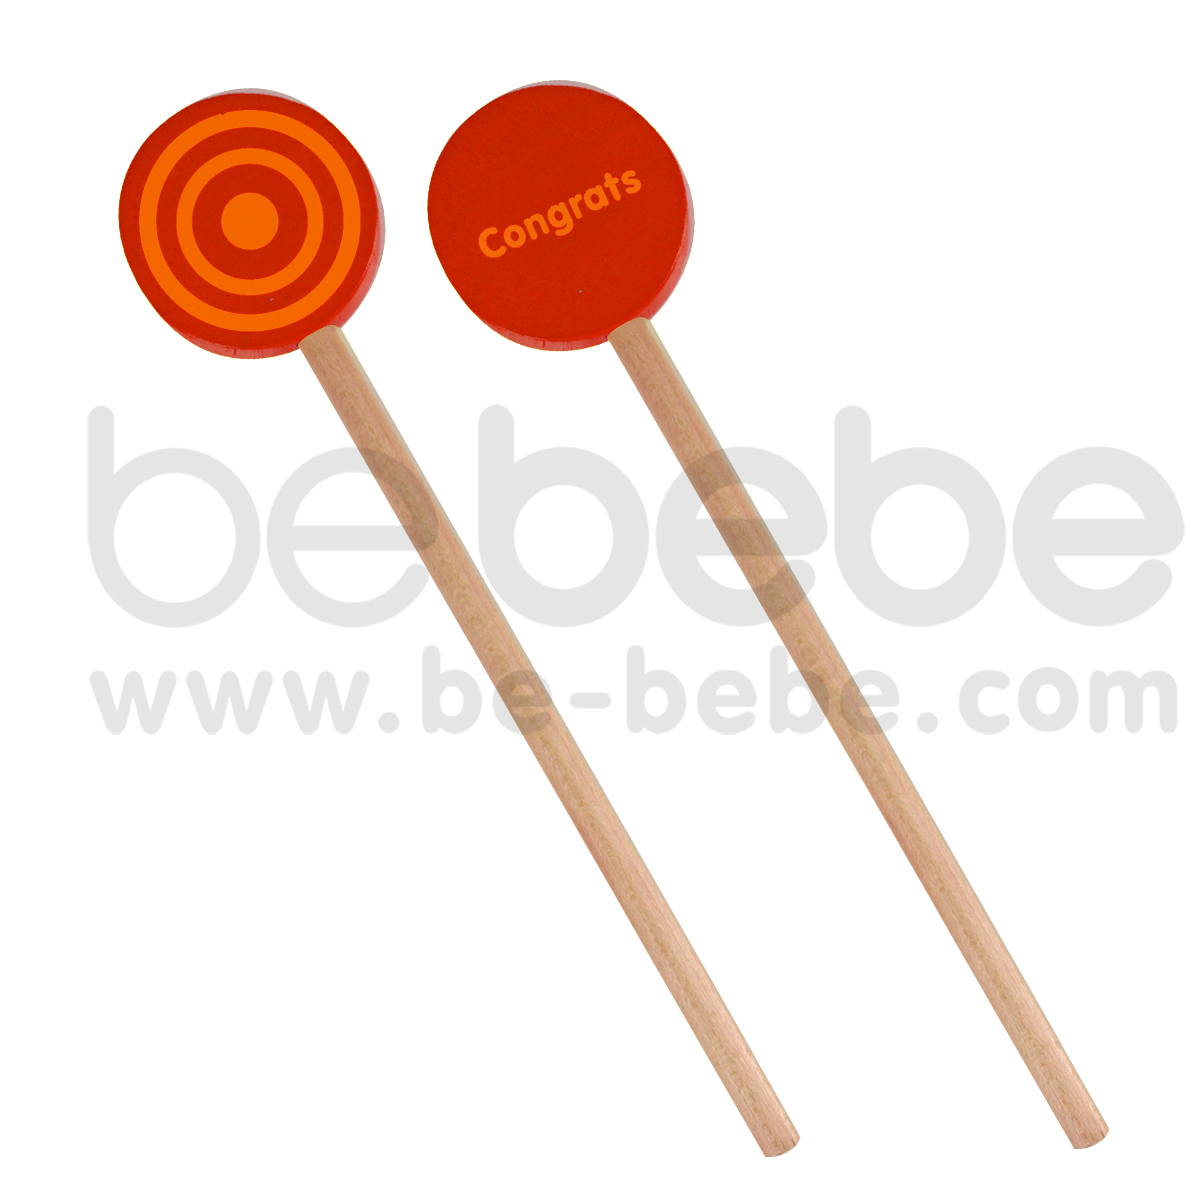 bebebe : Pencil-L-Circle-Congrats/Red